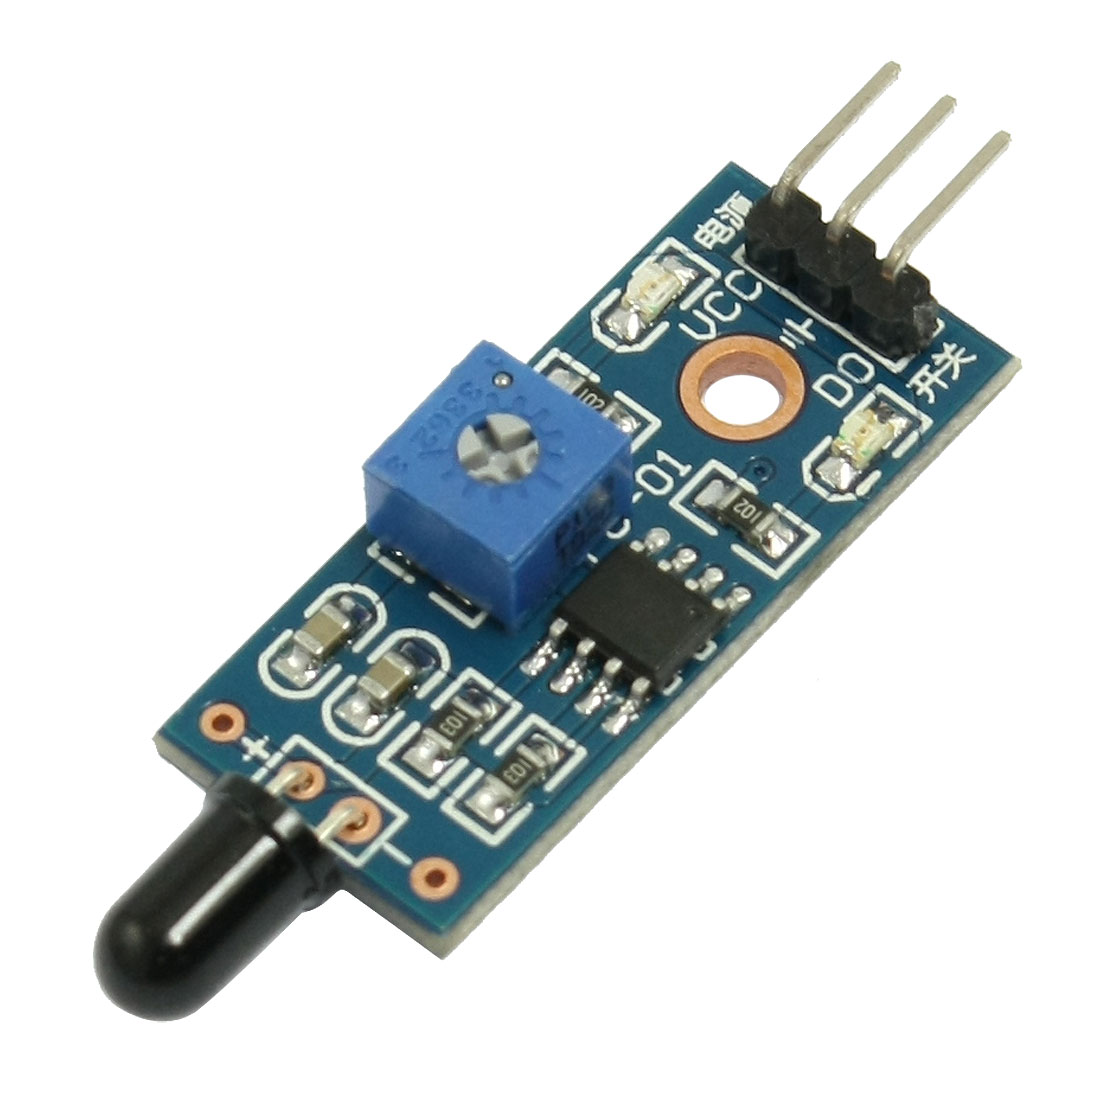 Temperature Sensor LM35 - HUB360